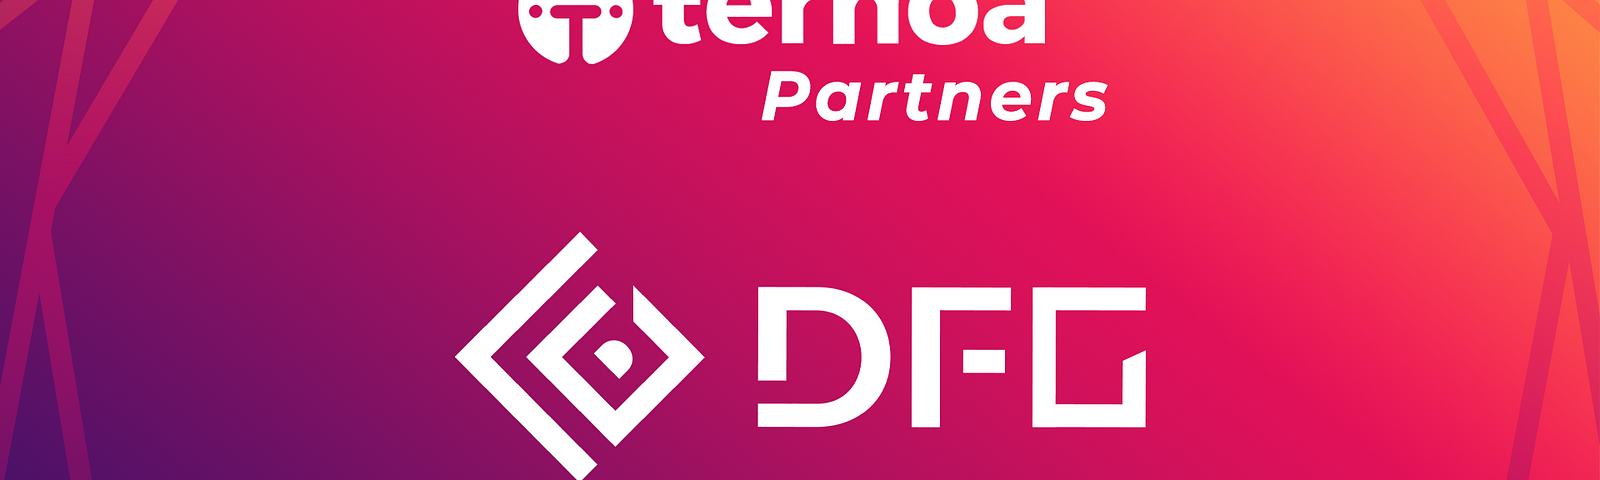 Ternoa partnership with DFG